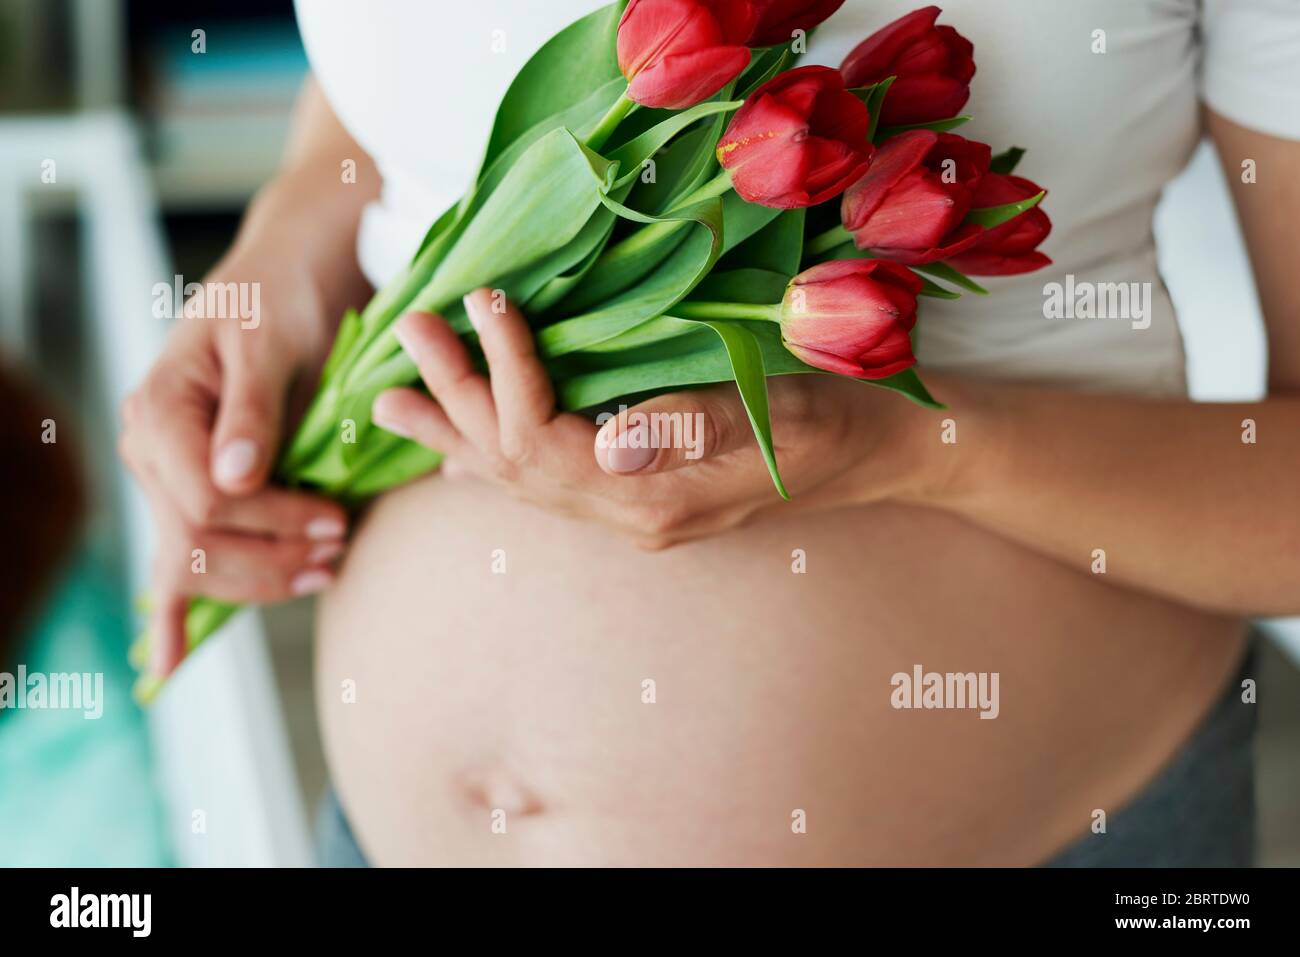 Gros plan de l'abdomen enceinte humain et bouquet de fleurs Banque D'Images